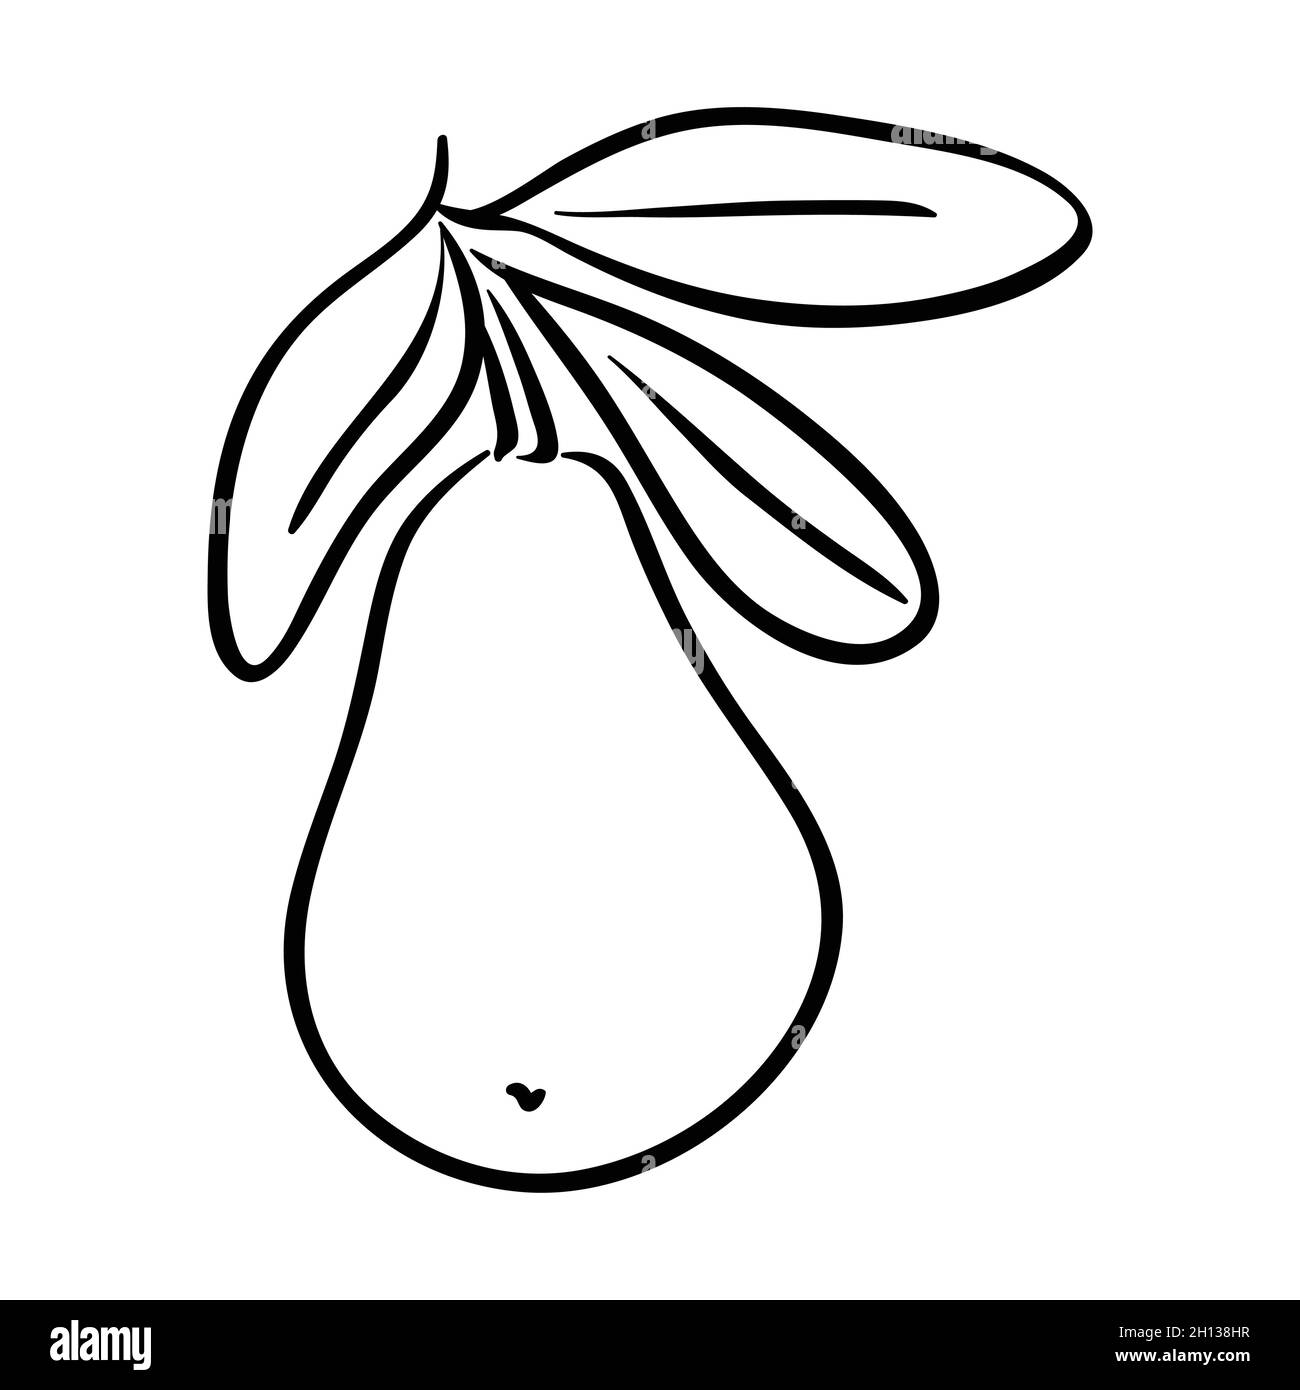 Pear fruit line art Stock Vector